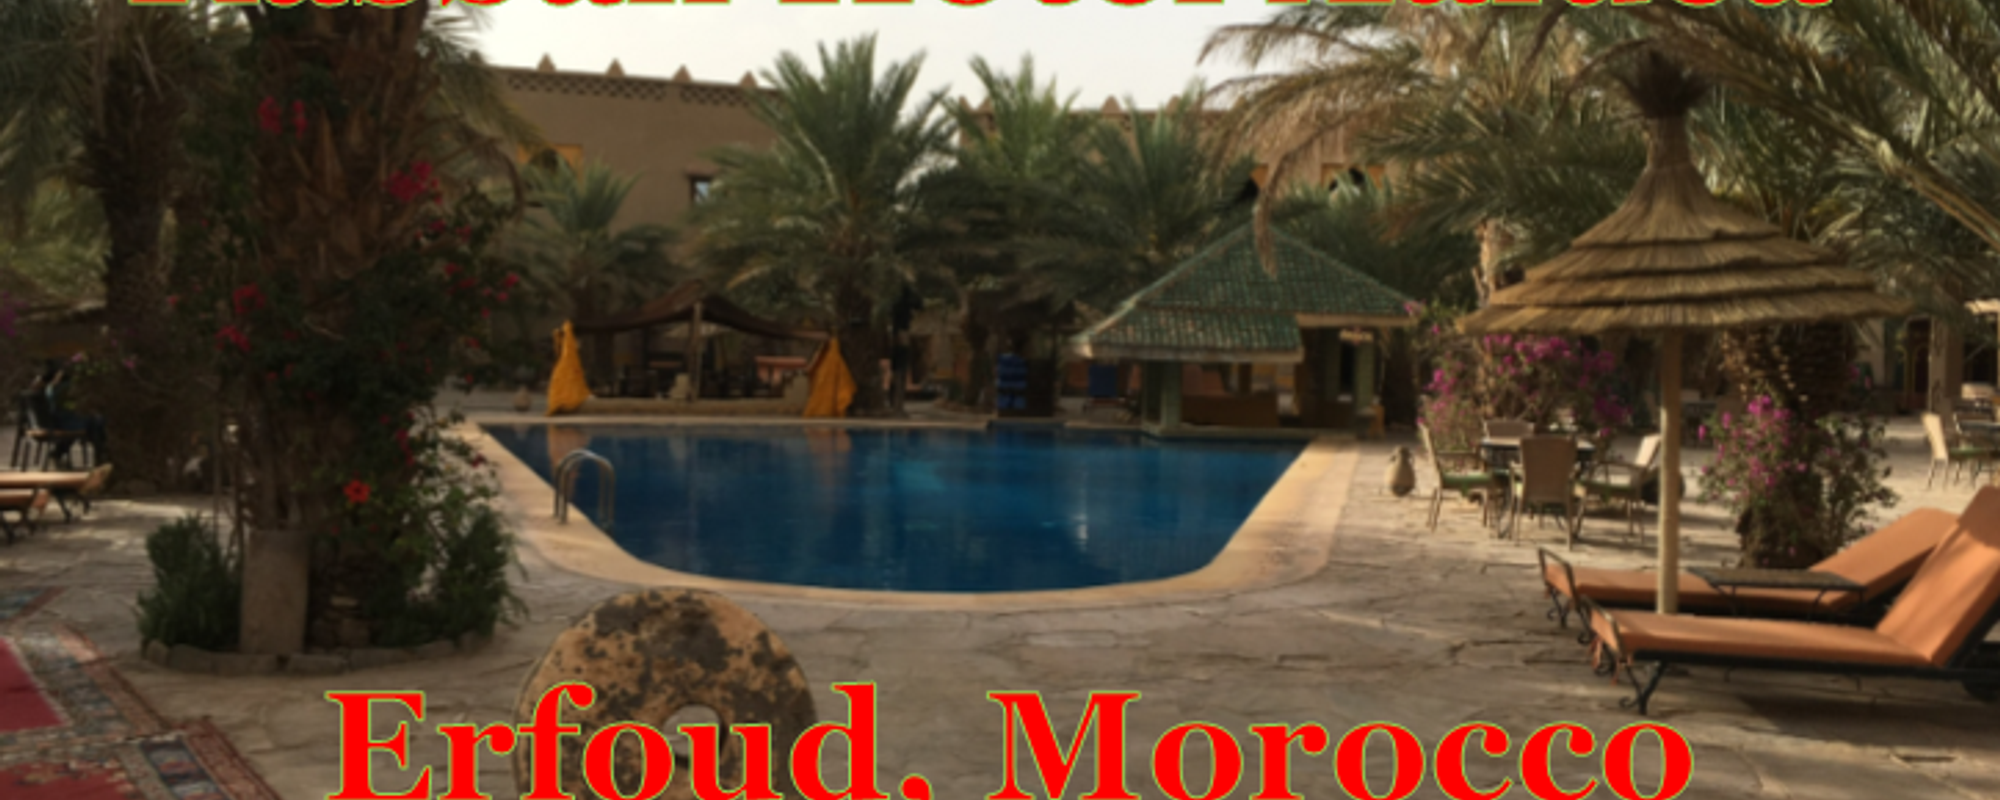 Kasbah Hotel Xaluca Maadid - Erfoud, Morocco